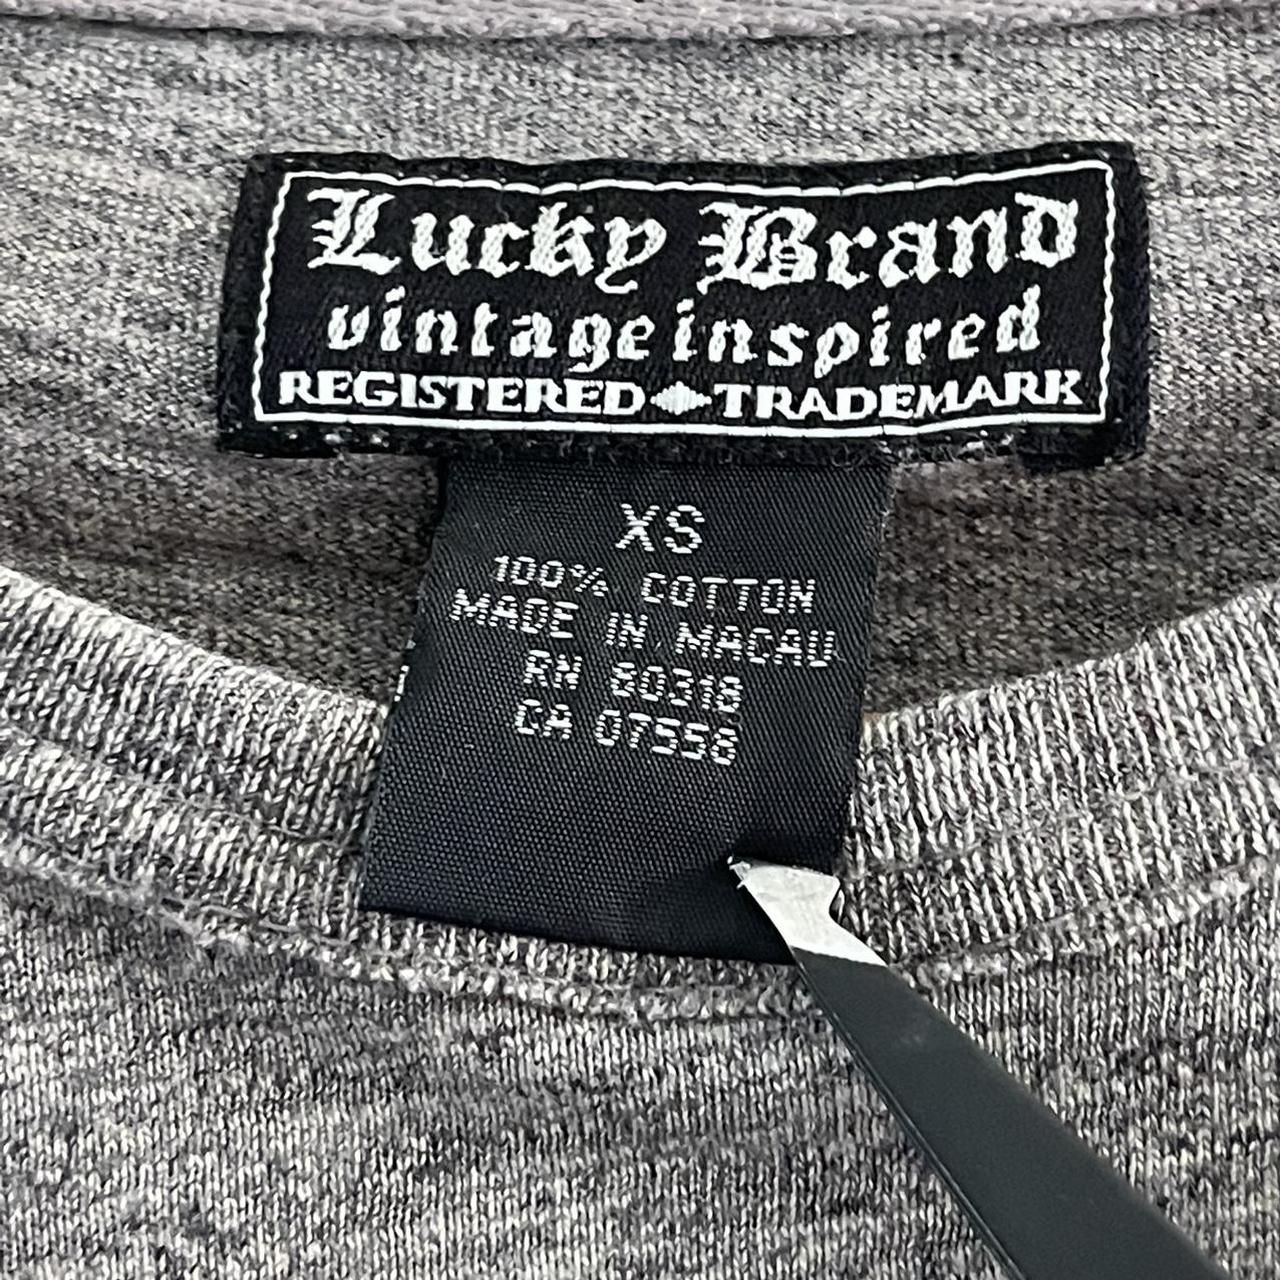 Lucky Brand Triumph Osaka Japan Long Sleeve T-shirt... - Depop